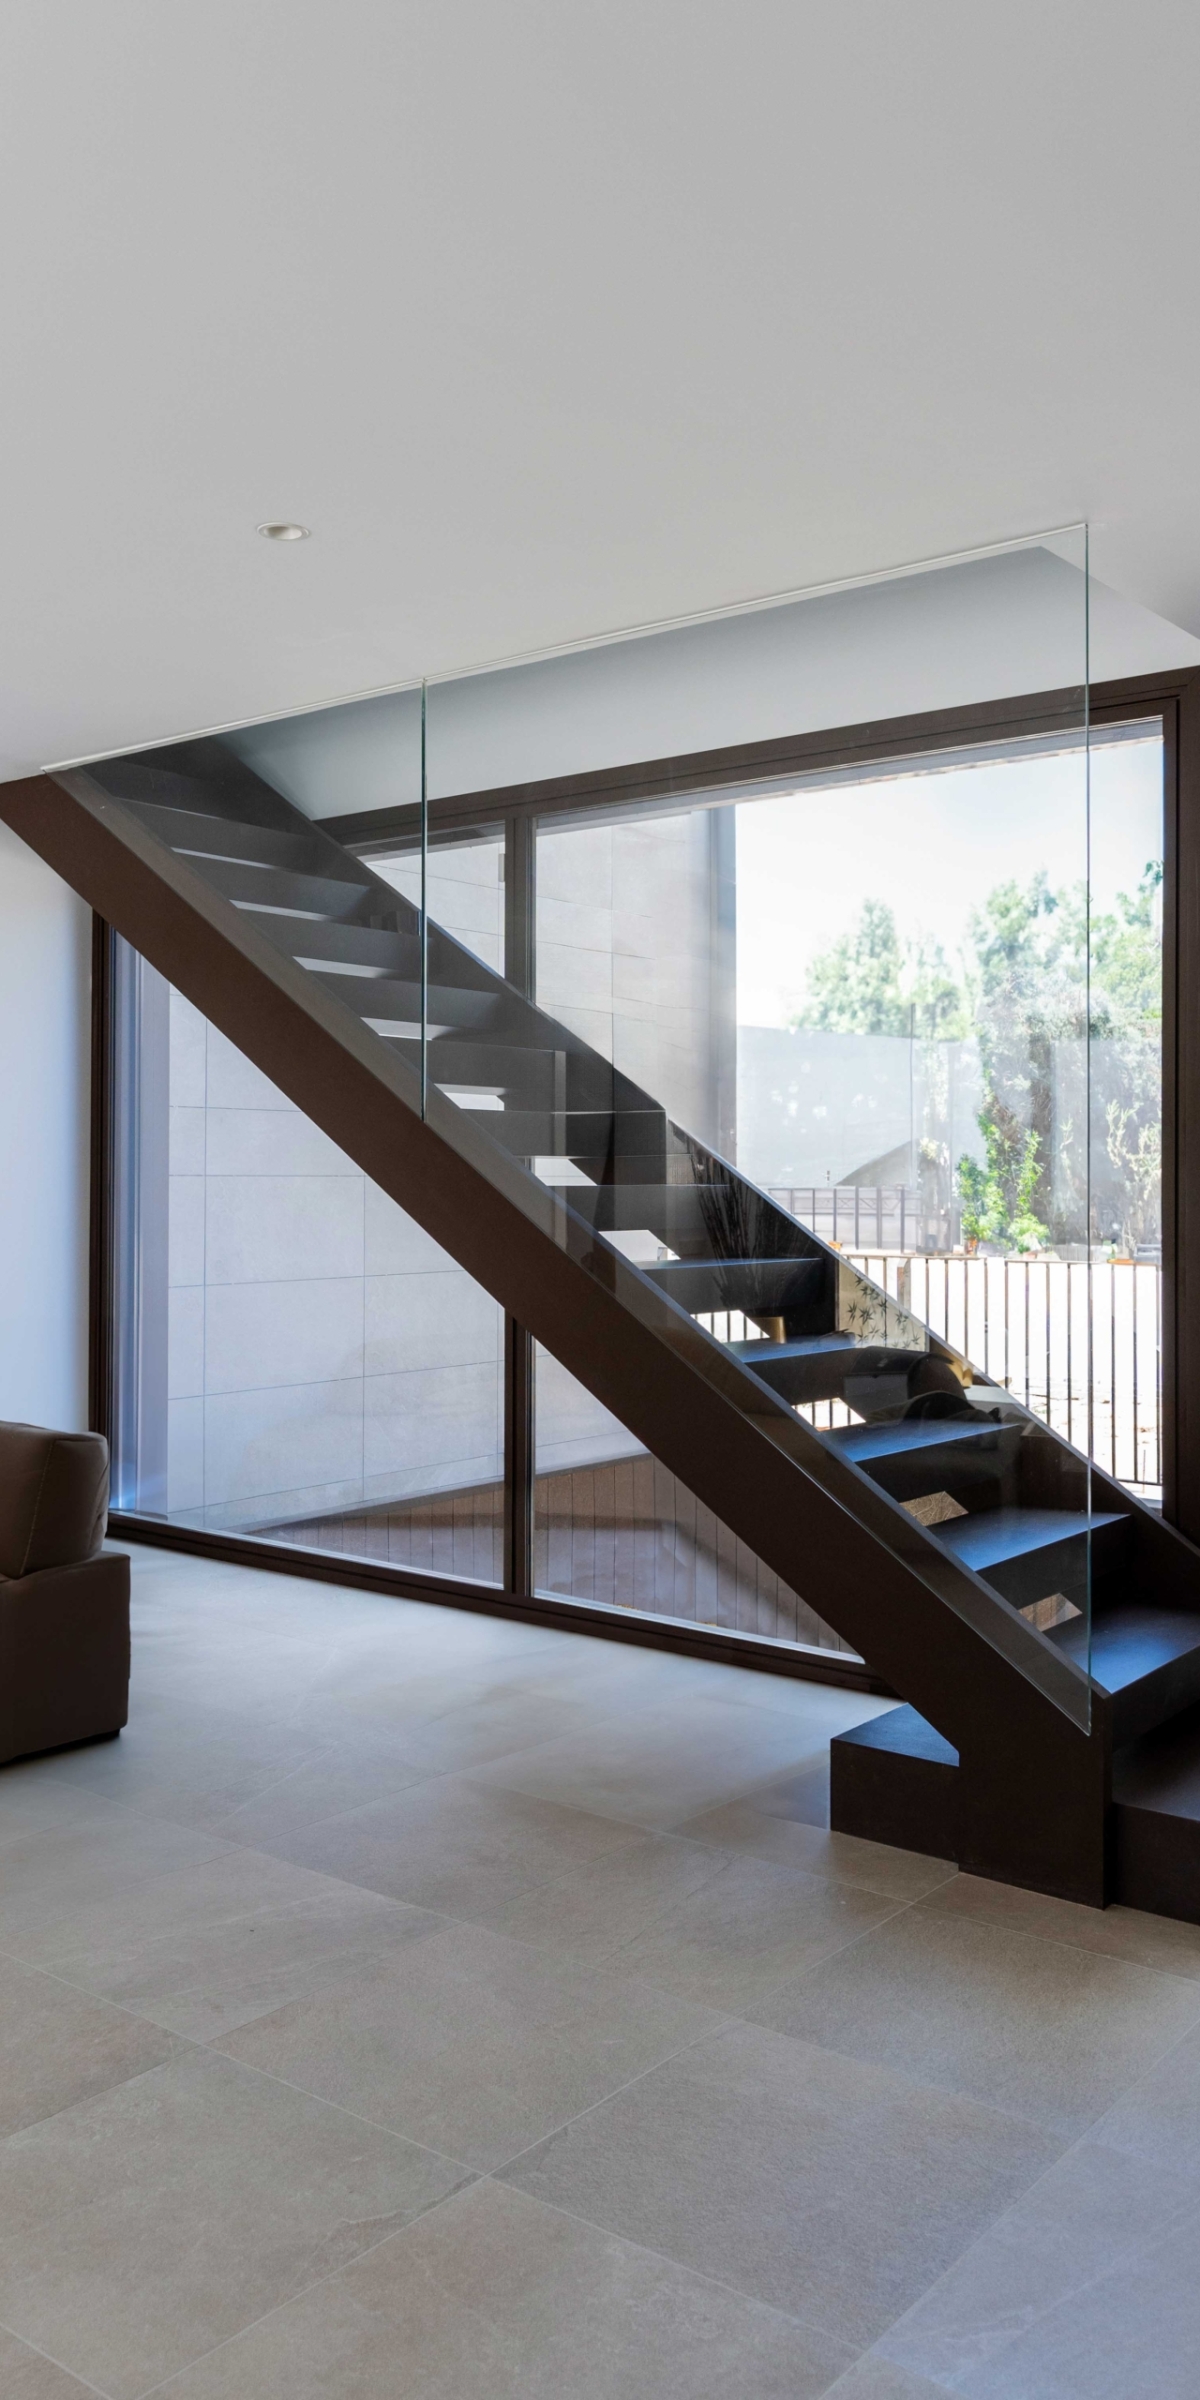 Diseño de interior modeno en casa de lujo, escaleras centradas